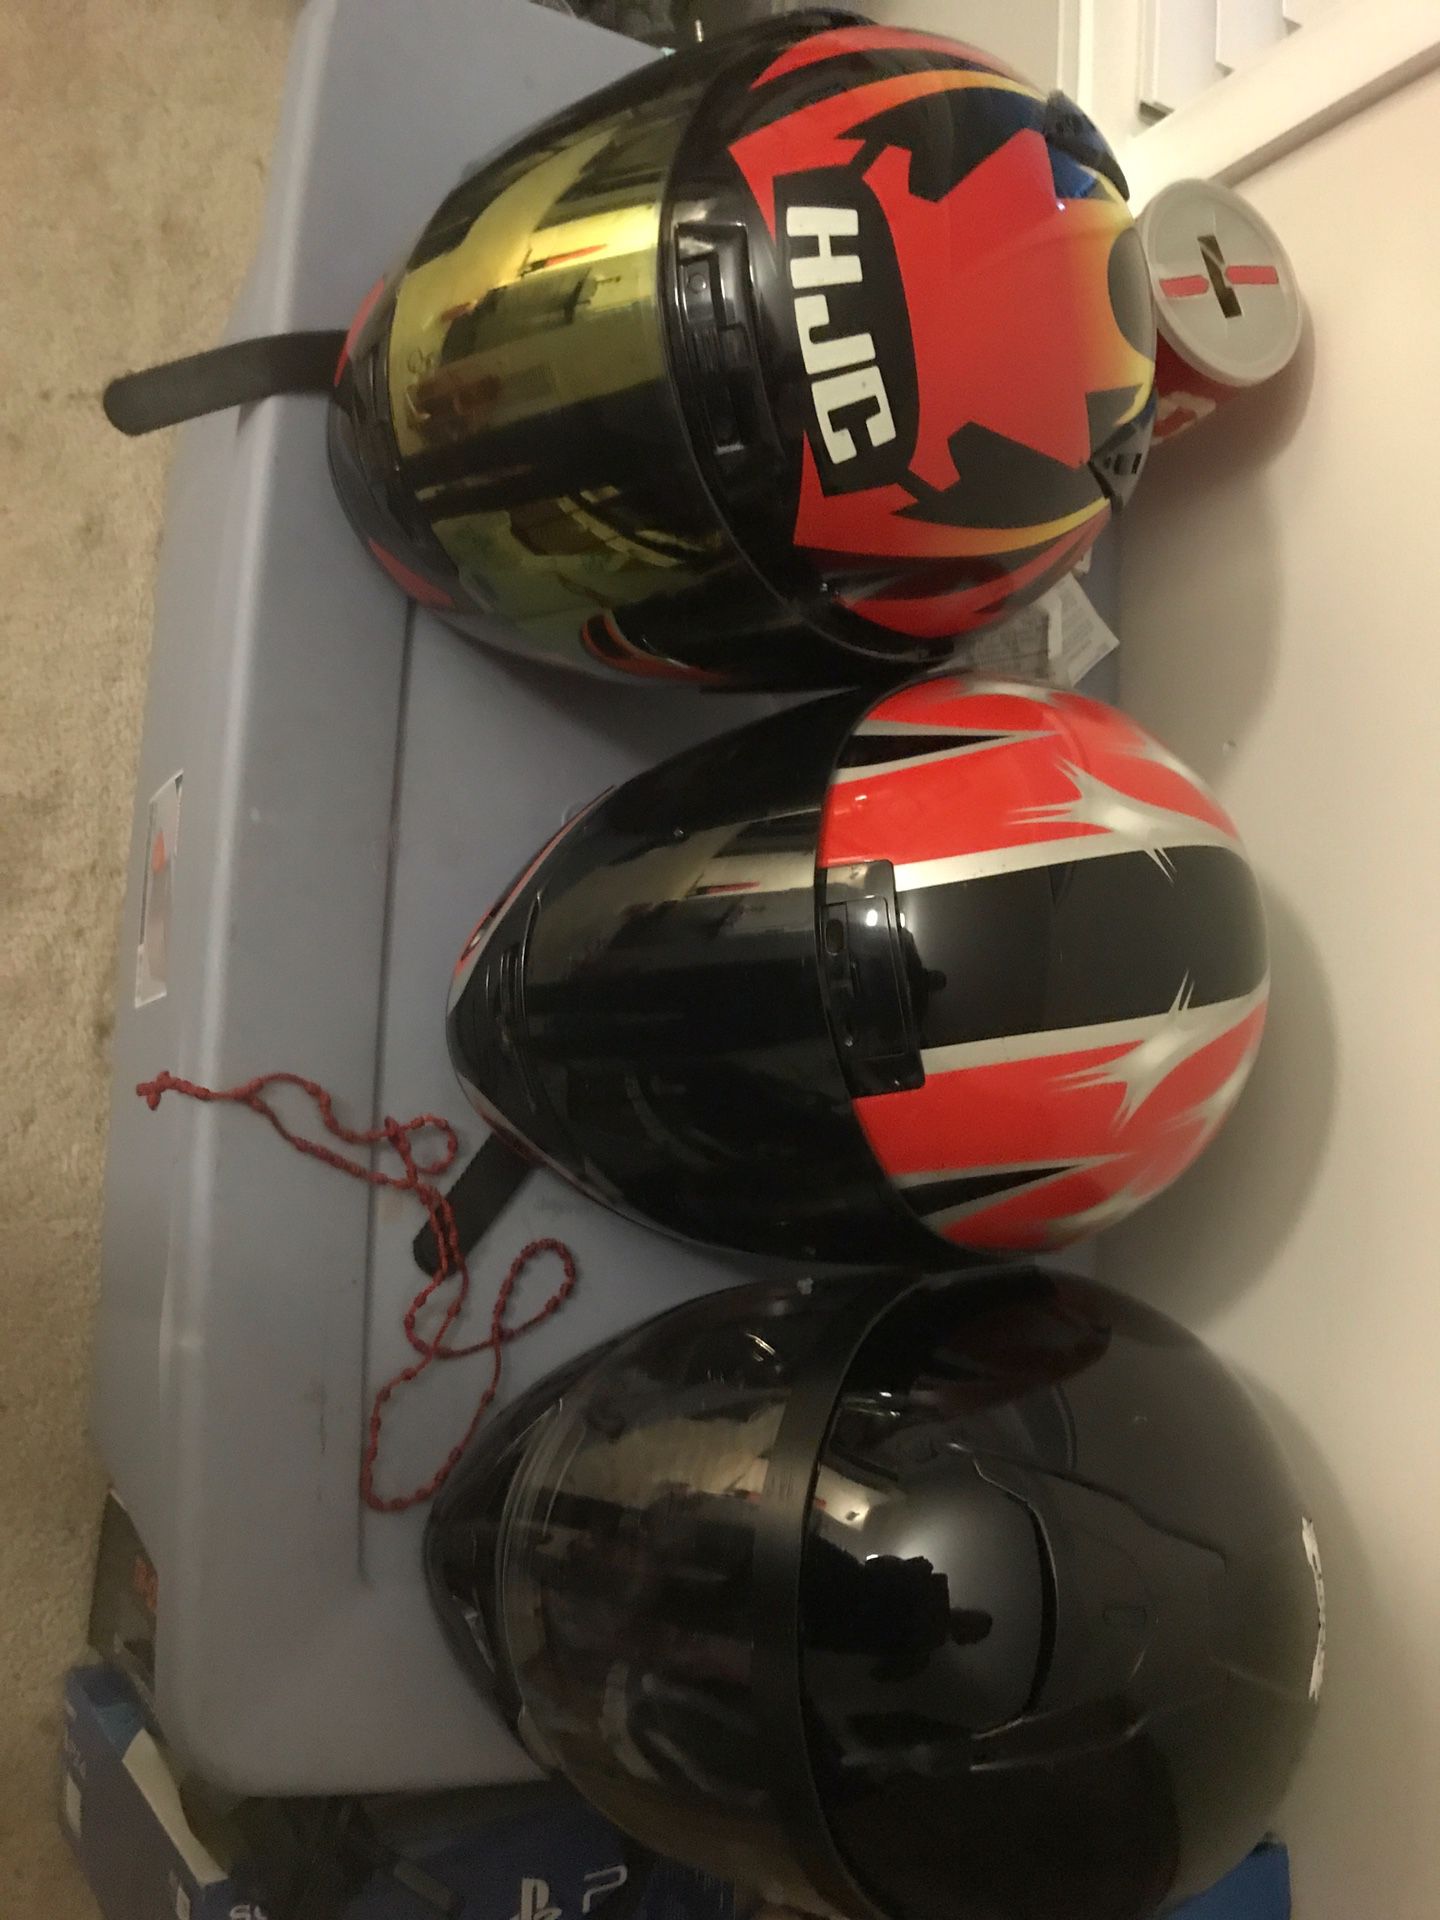 3 HJC helmets